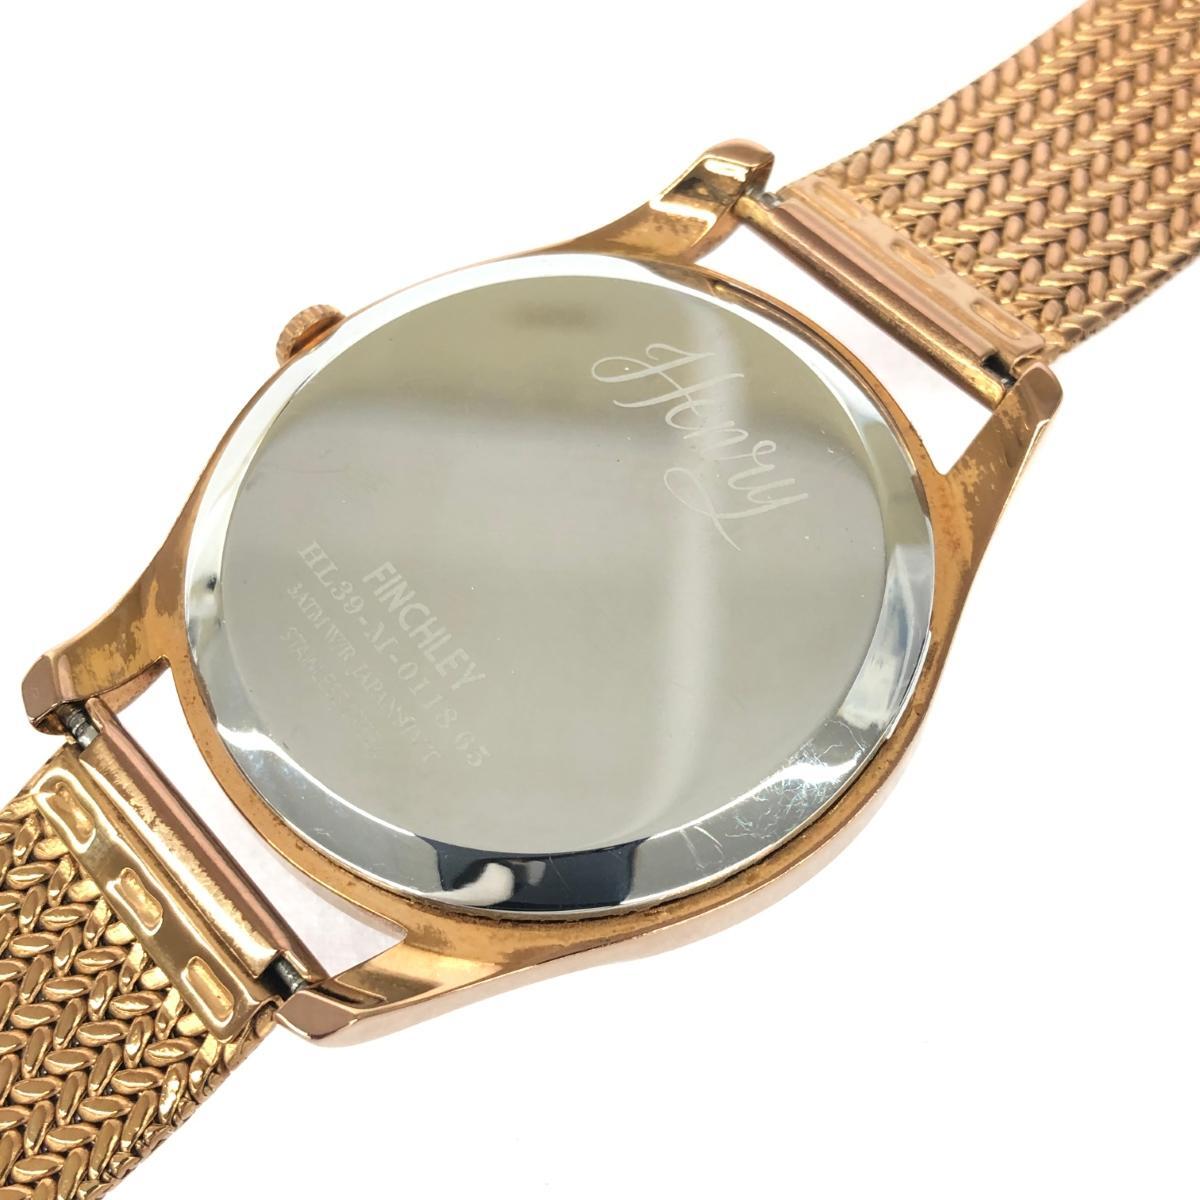 ◆HENRY LONDON ヘンリーロンドン 腕時計 ◆HL39 ゴールドカラー SS レディース ウォッチ watchの画像7